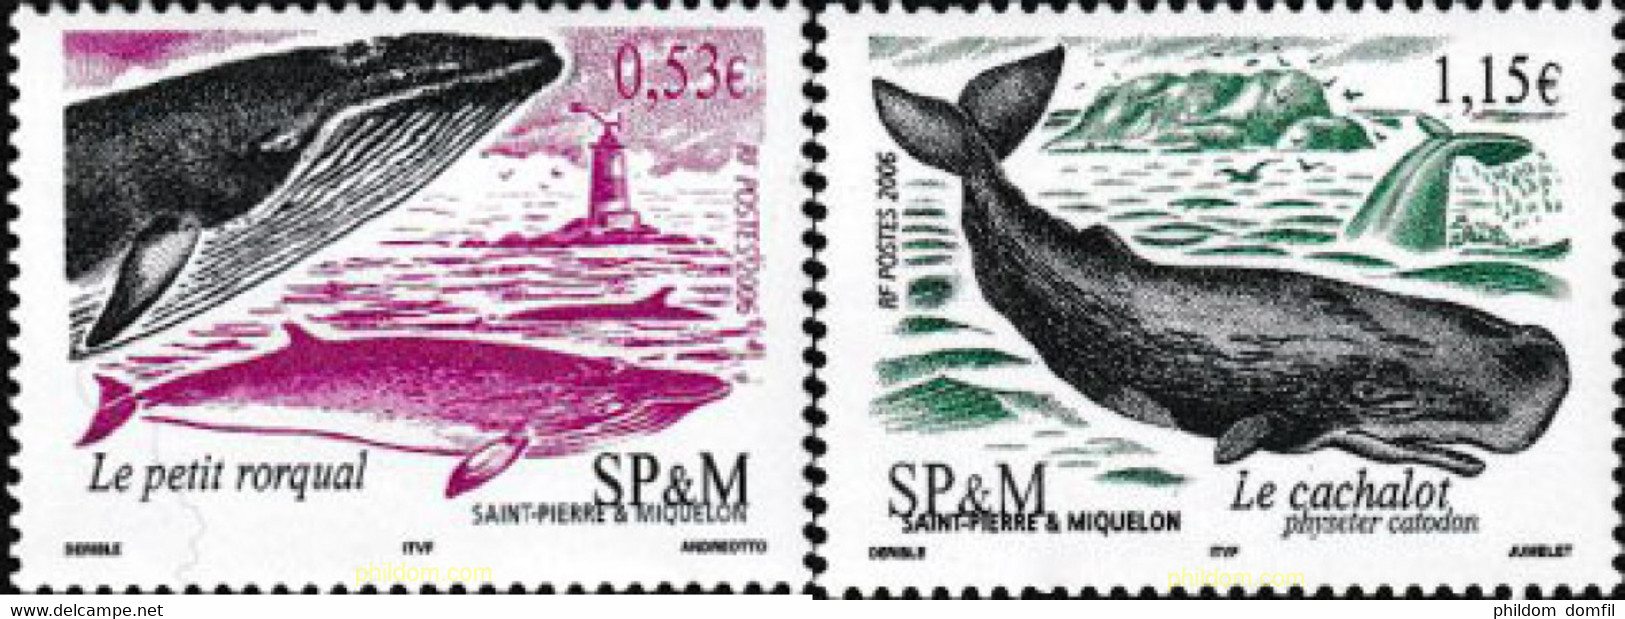 180741 MNH SAN PEDRO Y MIQUELON 2006 CETACEOS - Used Stamps